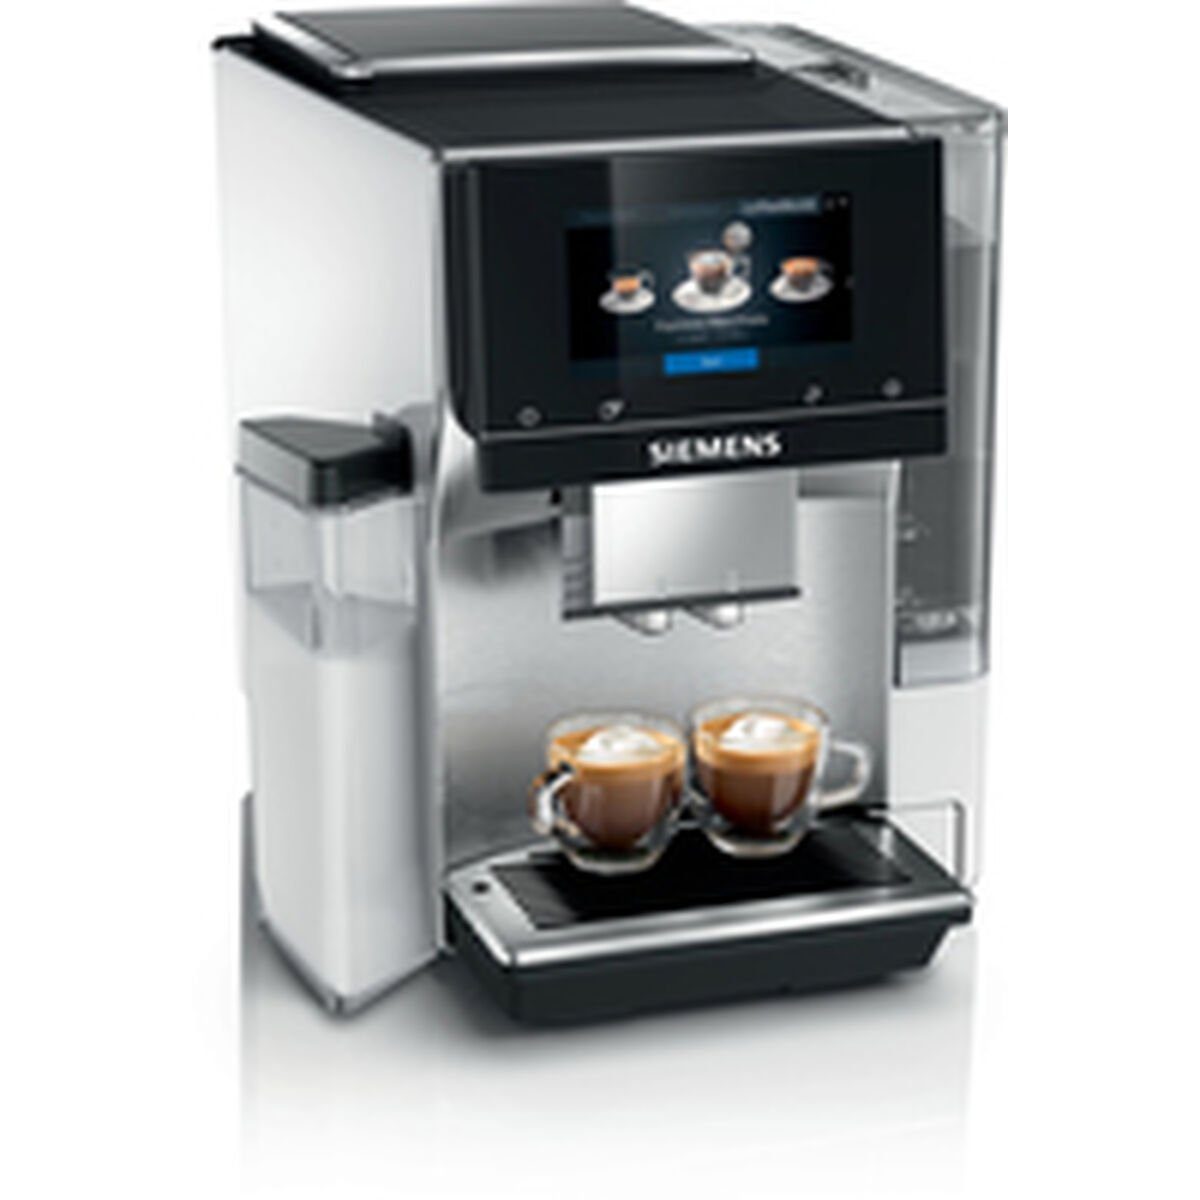 AG W Kaffeemaschine Kaffeevollautomat TQ705R03 SIEMENS Superautomatische Siemens 1500